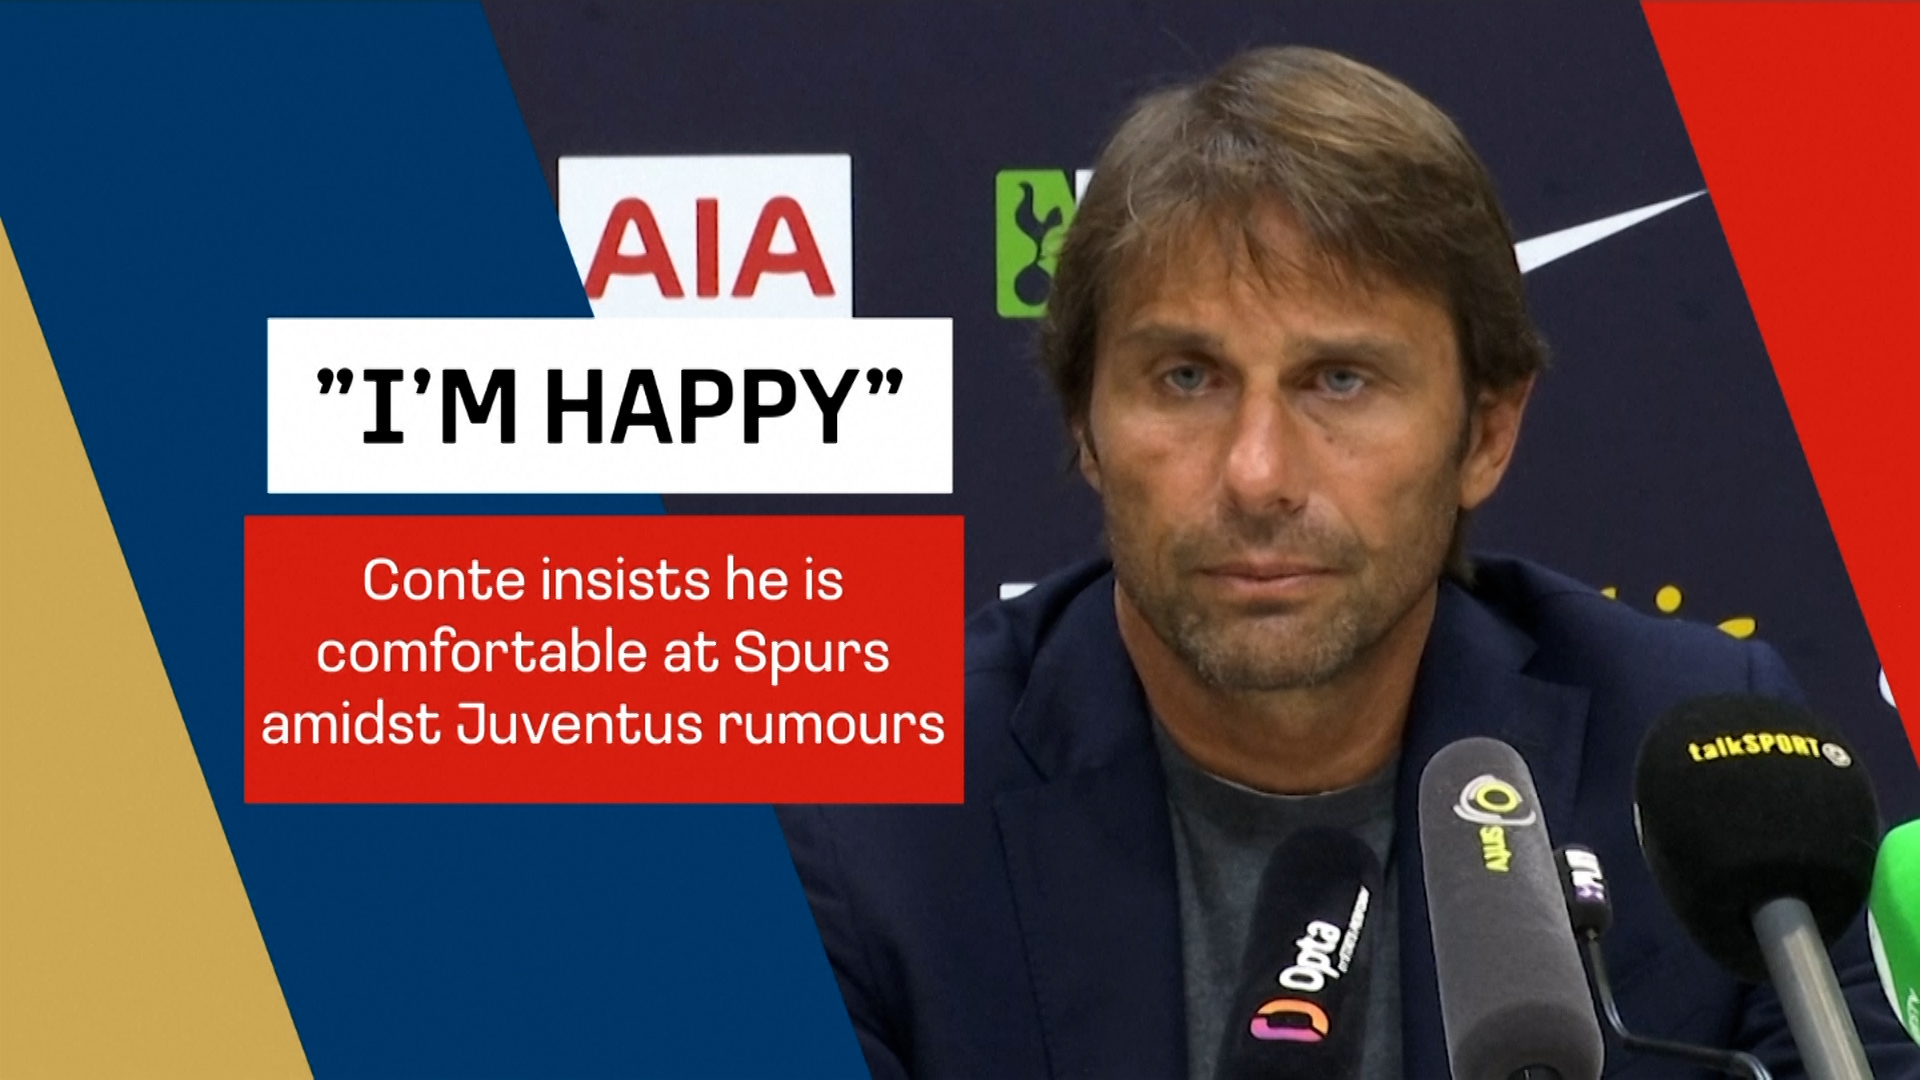 Antonio Conte "happy" at Spurs despite Juventus interest